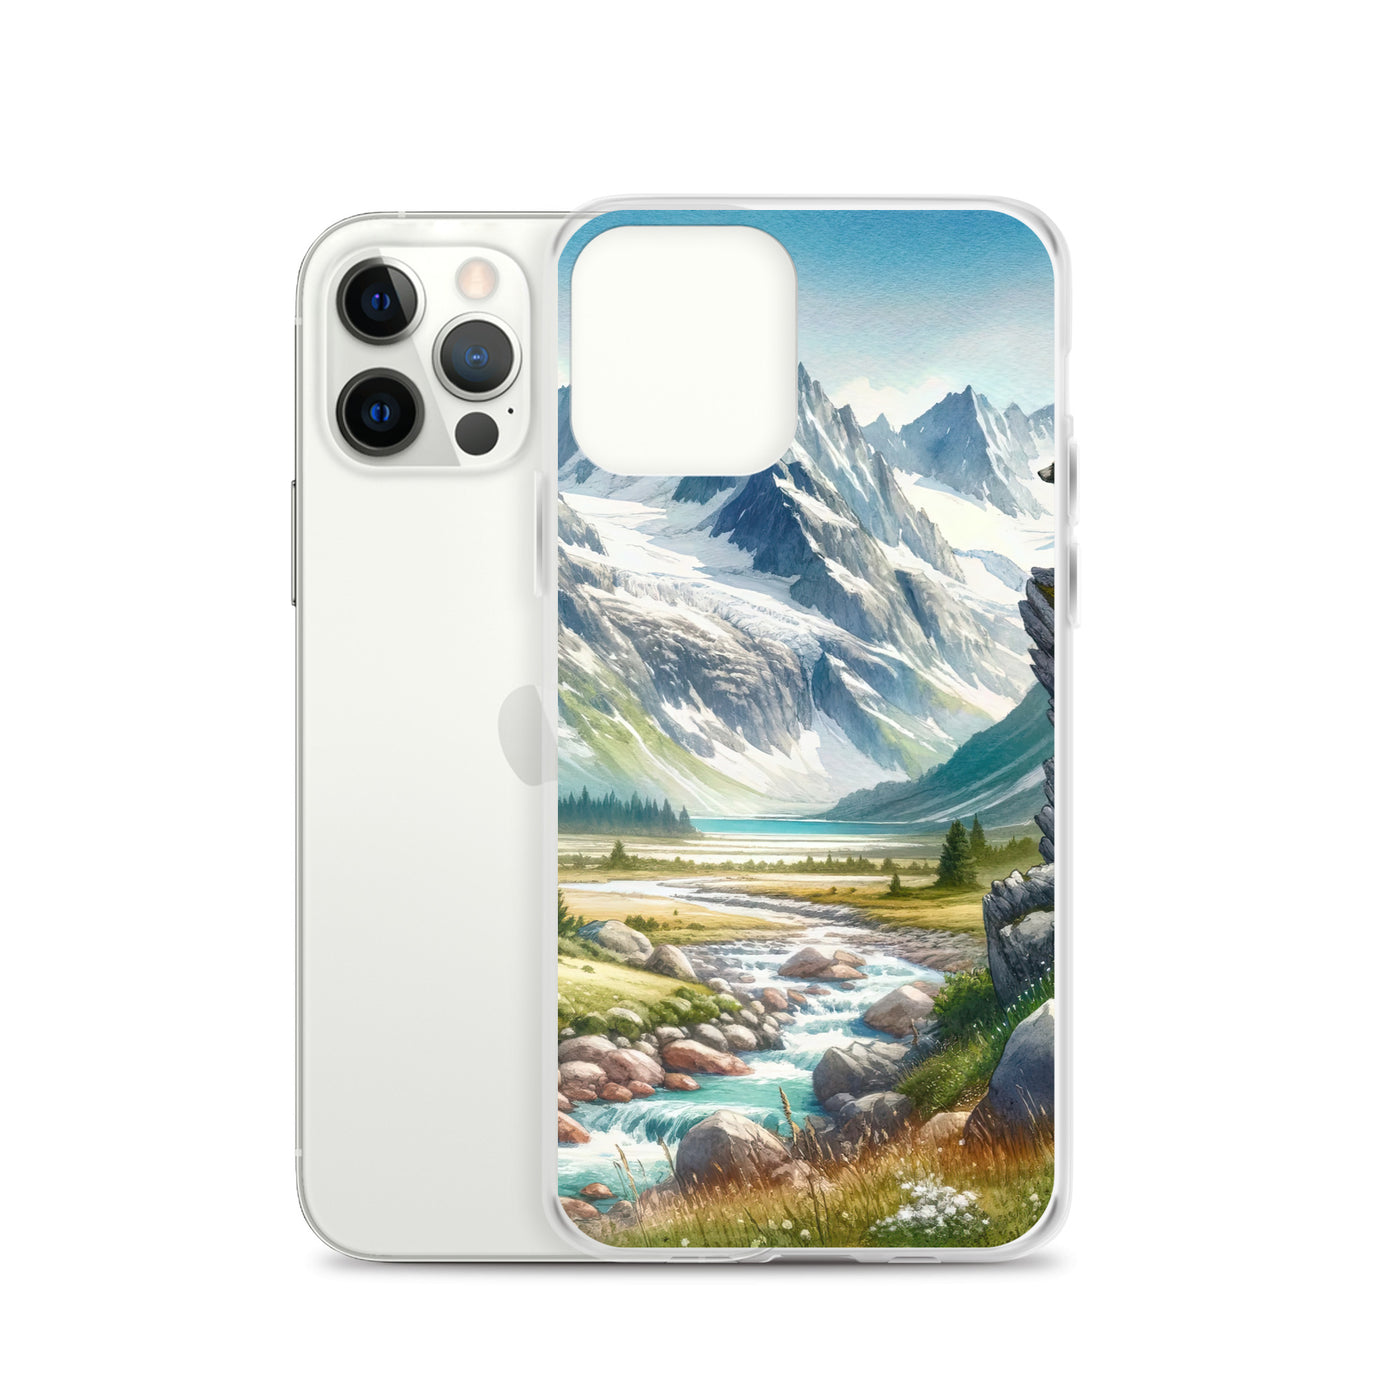 Aquarellmalerei eines Bären und der sommerlichen Alpenschönheit mit schneebedeckten Ketten - iPhone Schutzhülle (durchsichtig) camping xxx yyy zzz